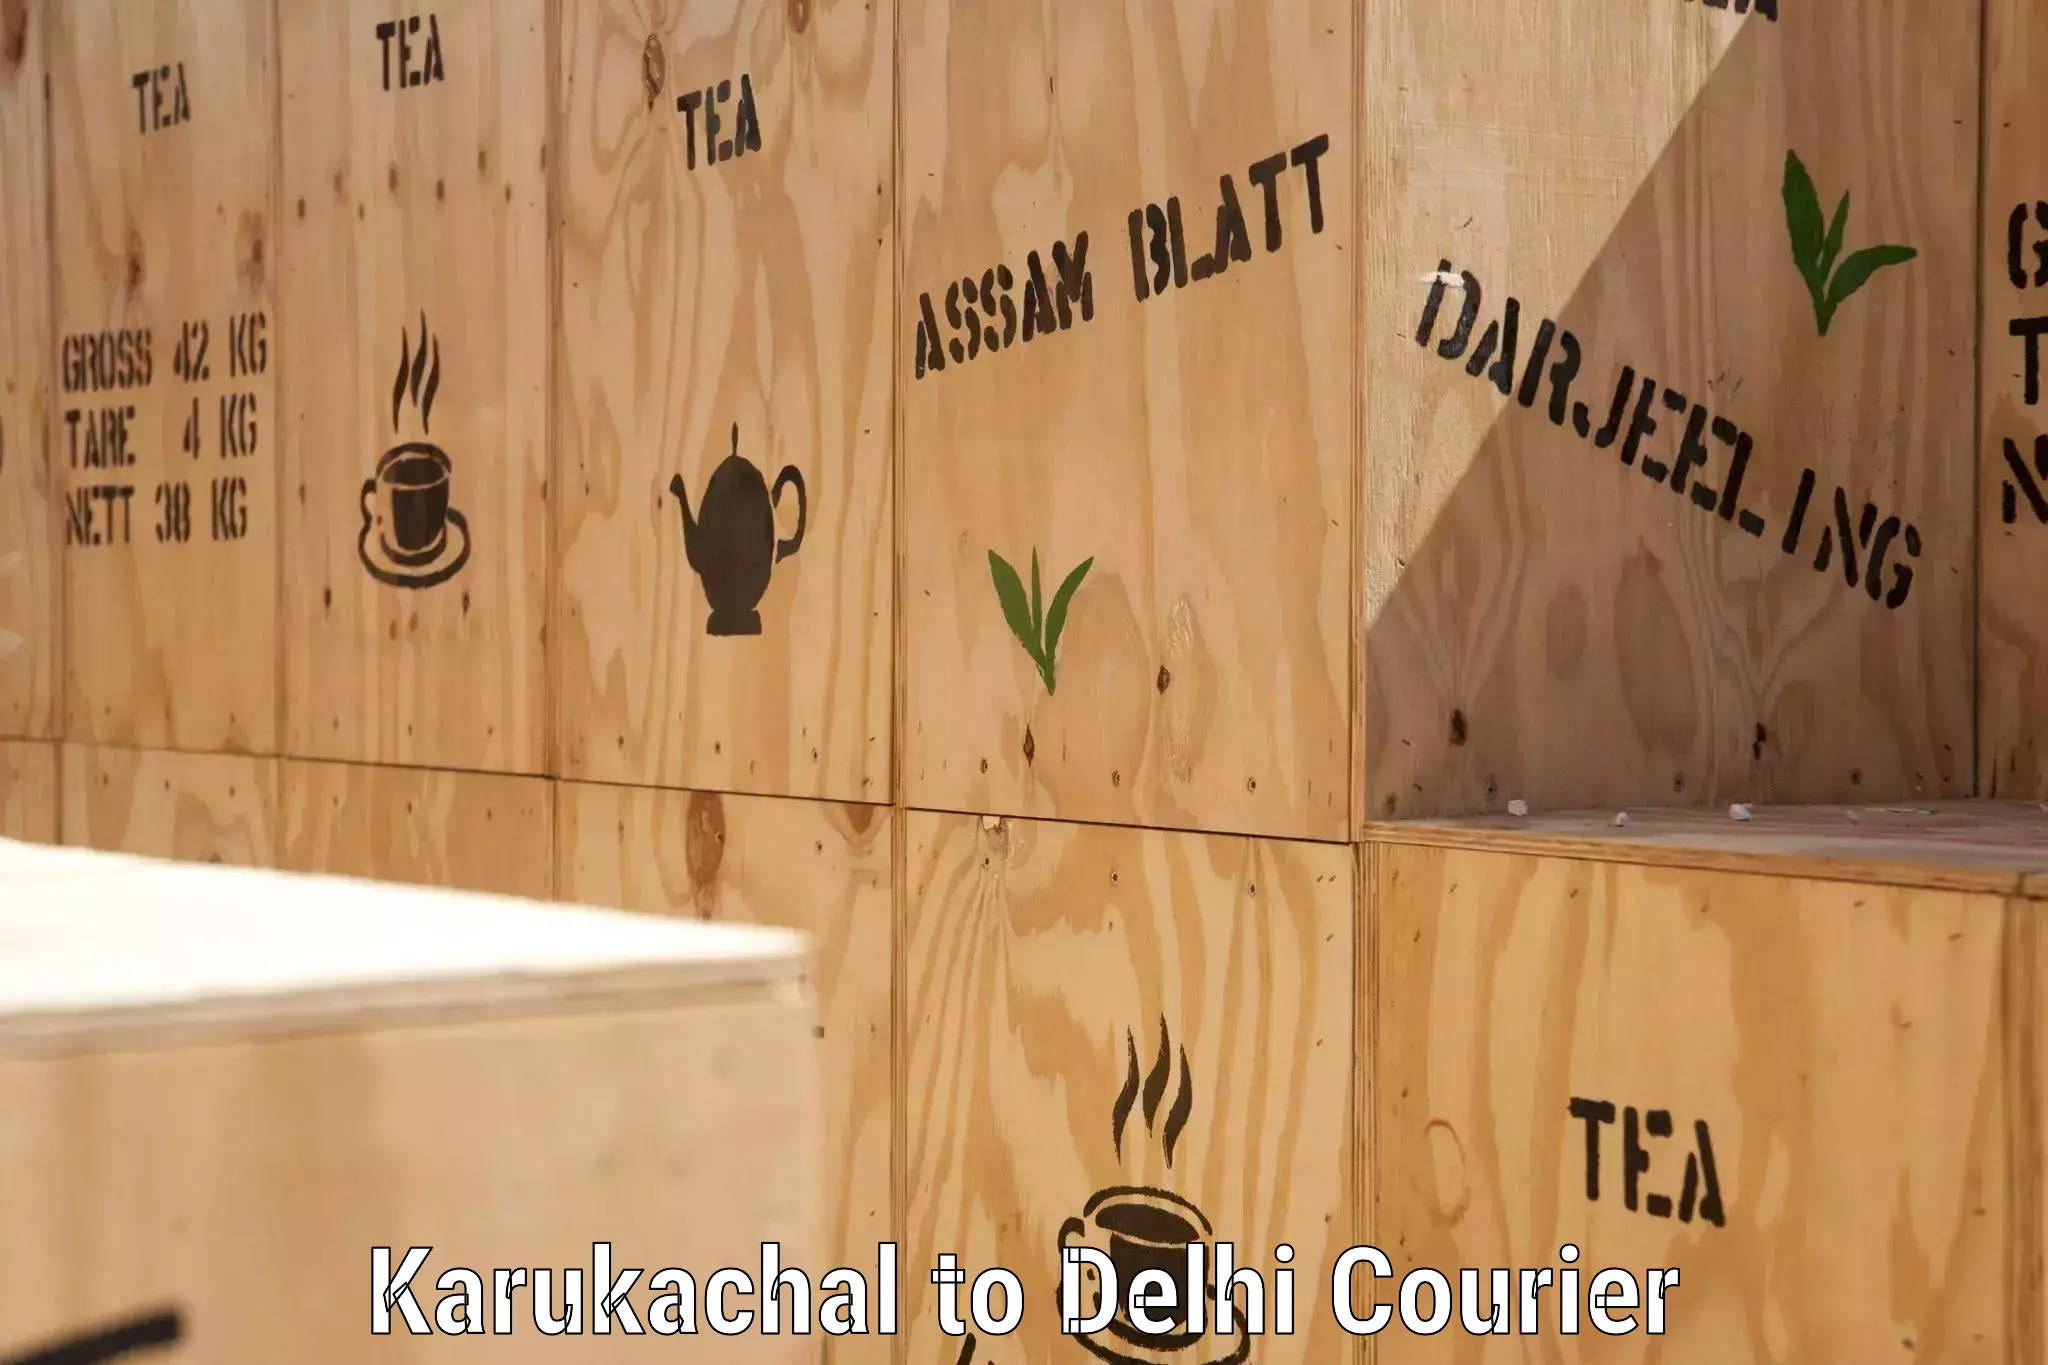 Secure packaging in Karukachal to East Delhi